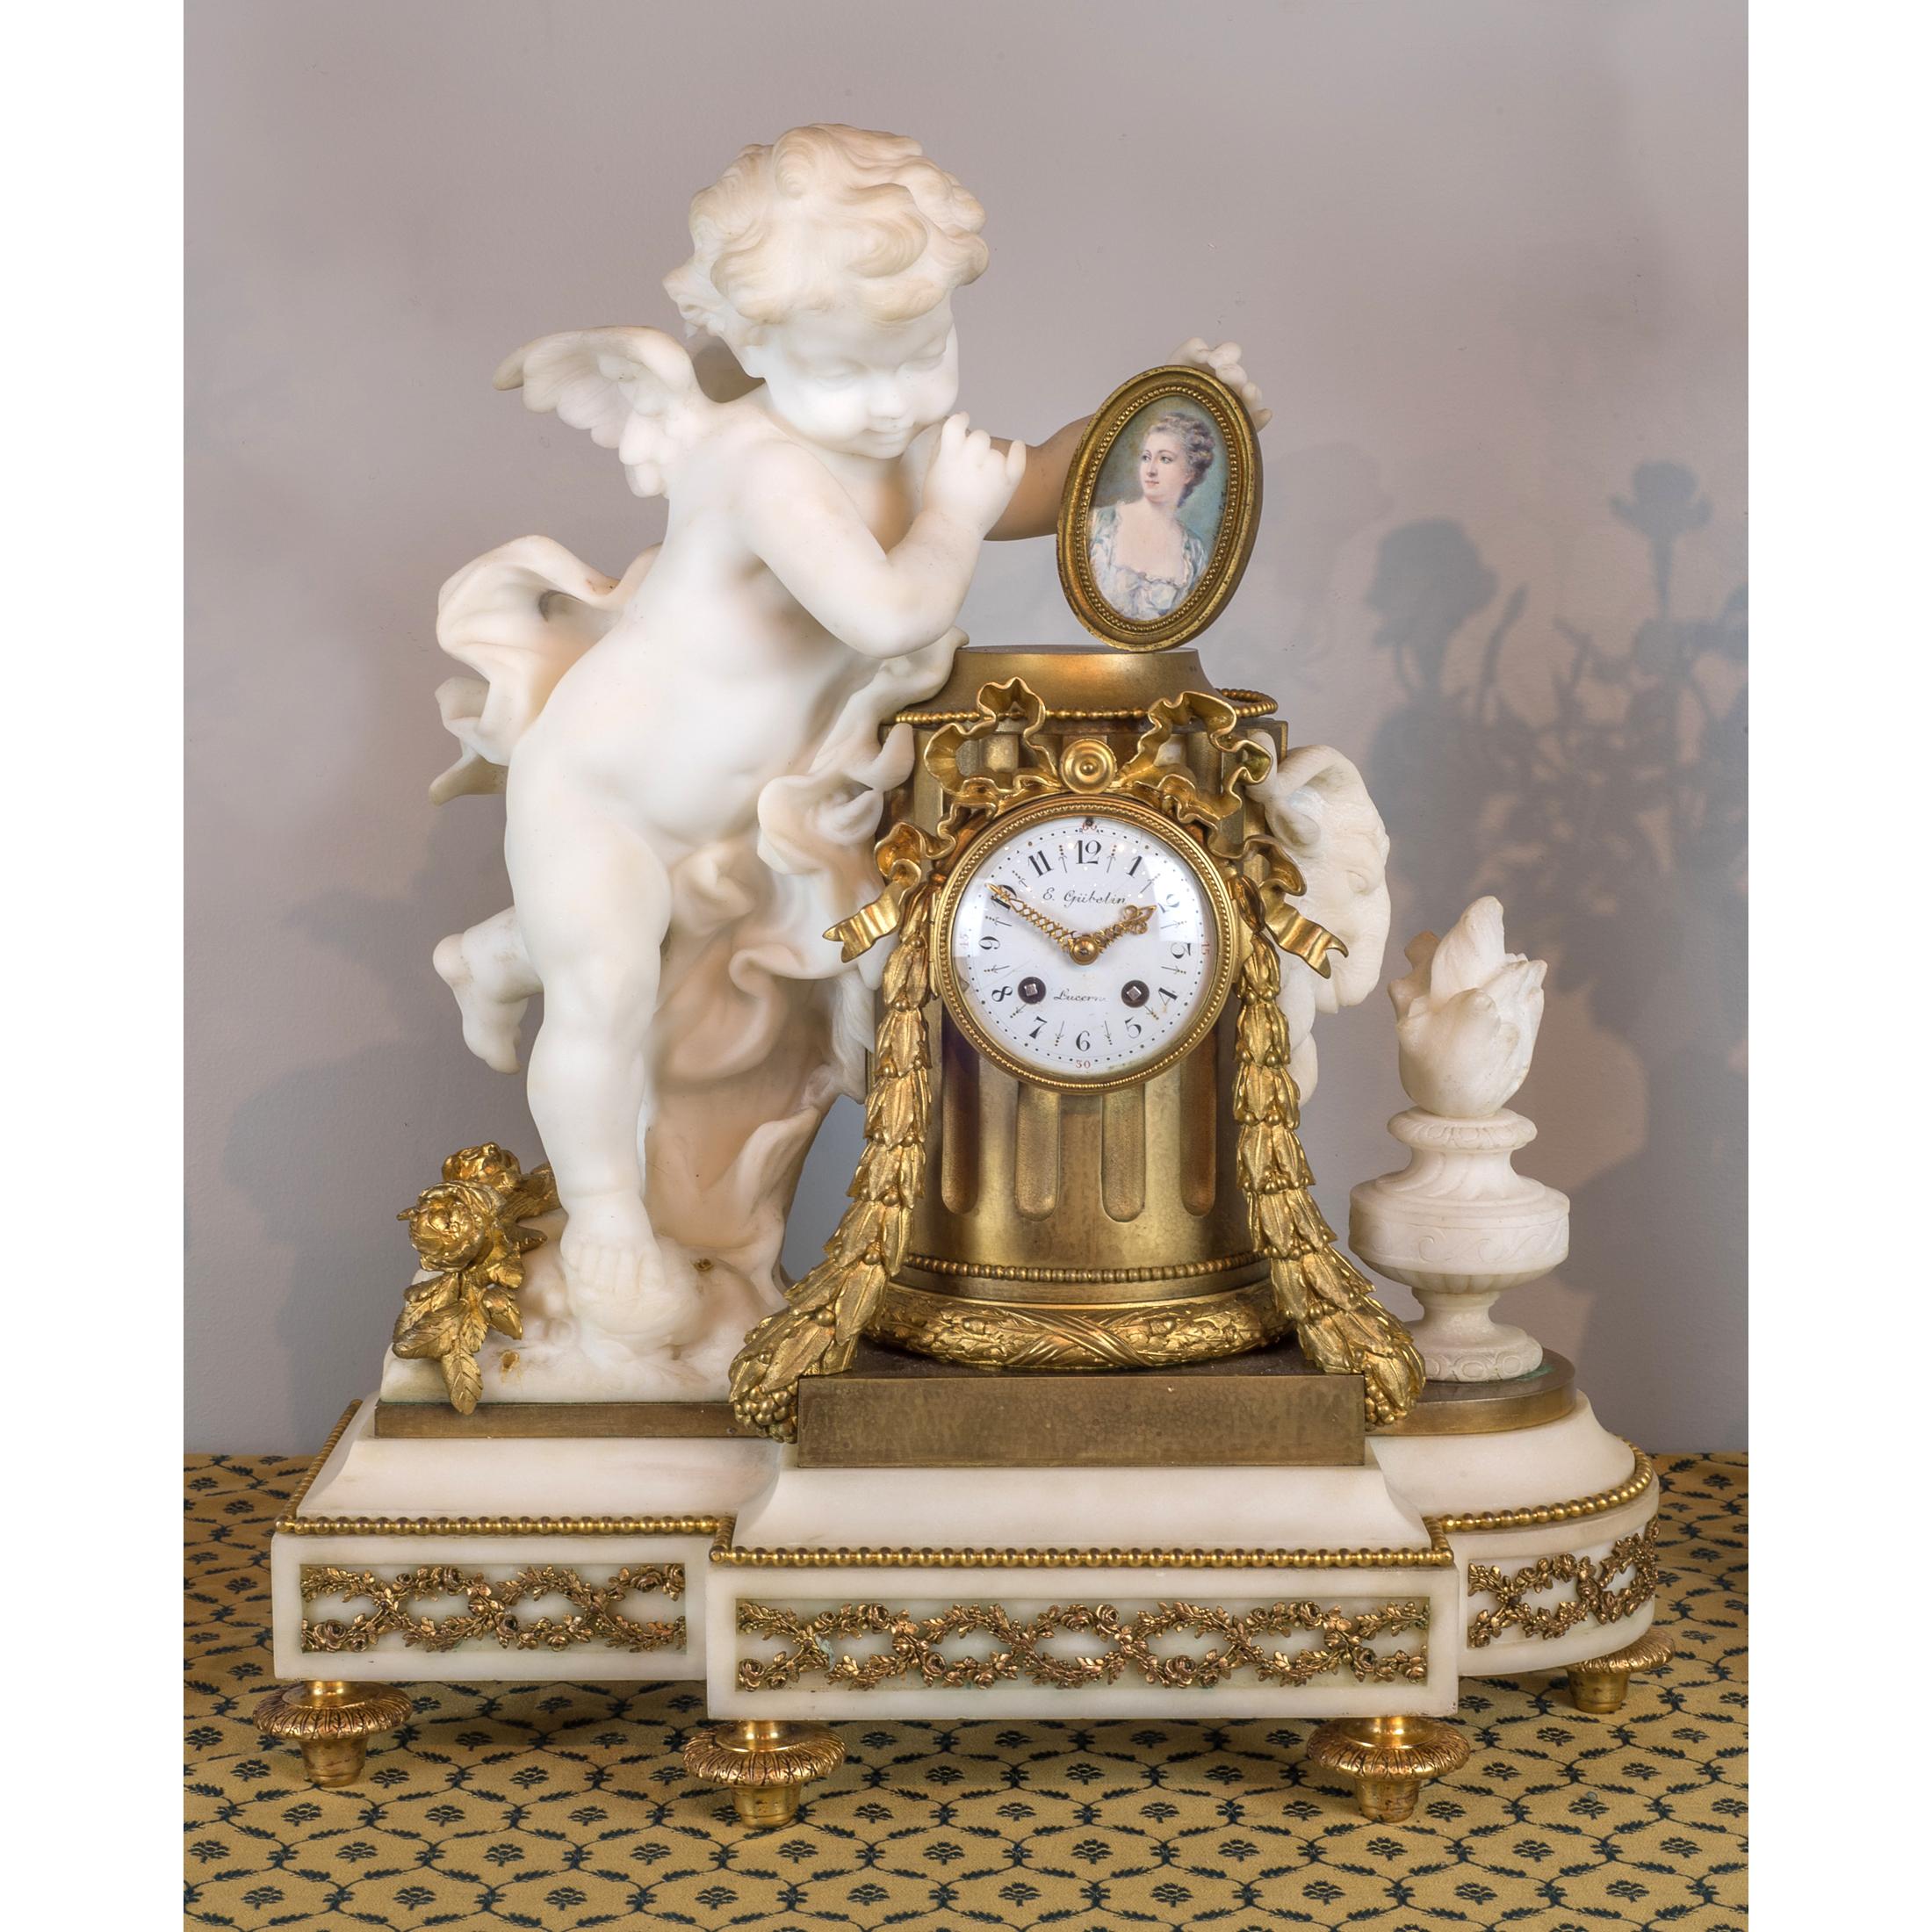 Signé E. GUBELIN, LUCERNE
Date : 19ème siècle
Origine : Français
Dimension : Horloge : 20 po x 18 1/2 po ; Chandeliers : 22 1/2 po de hauteur.